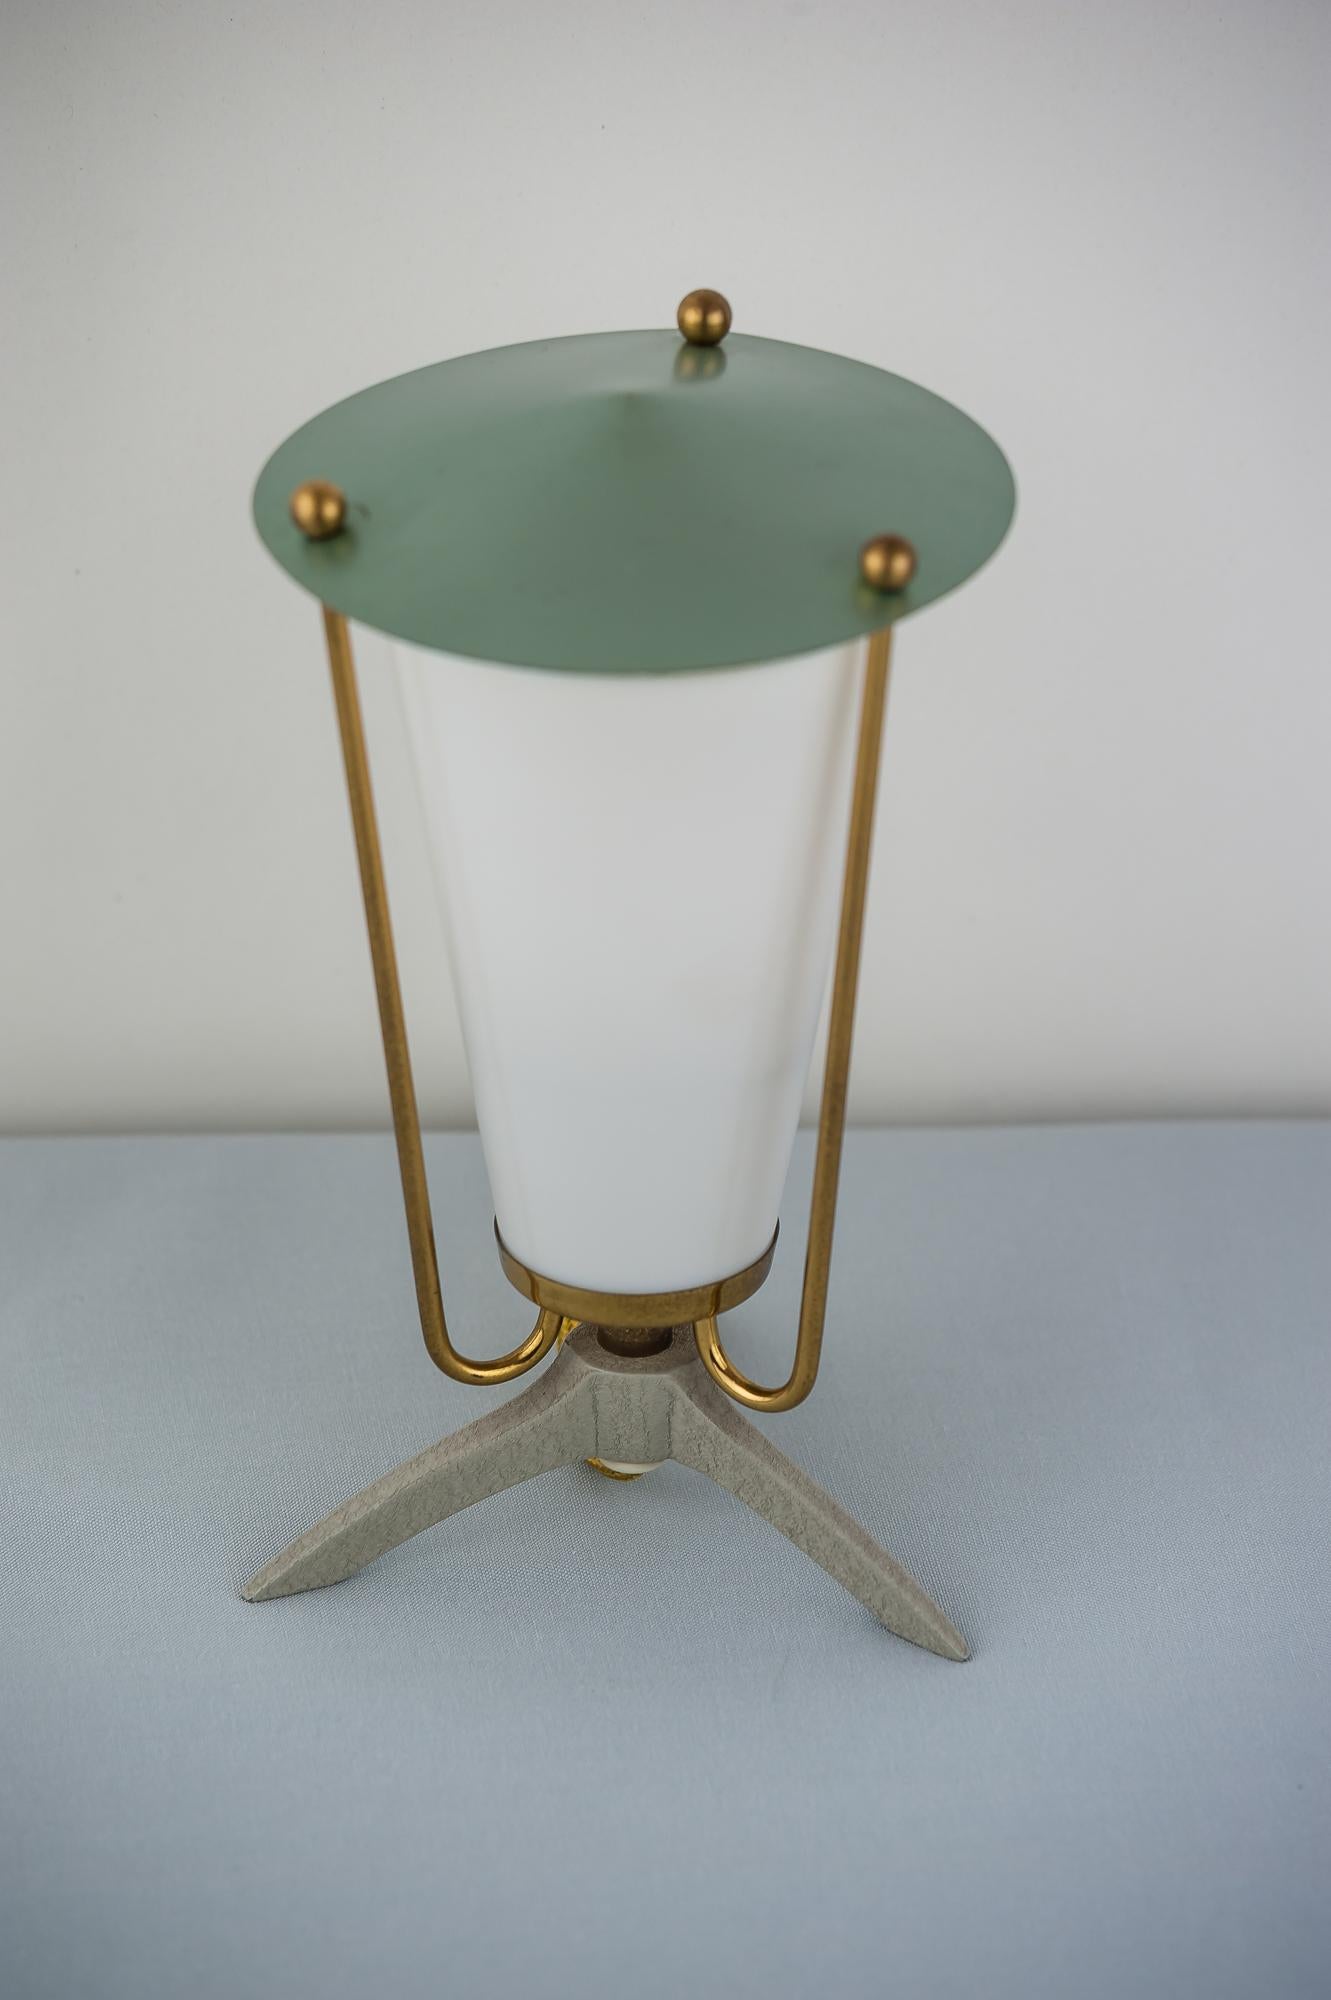 Small Kalmar table lamp, circa 1960s
Original condition.